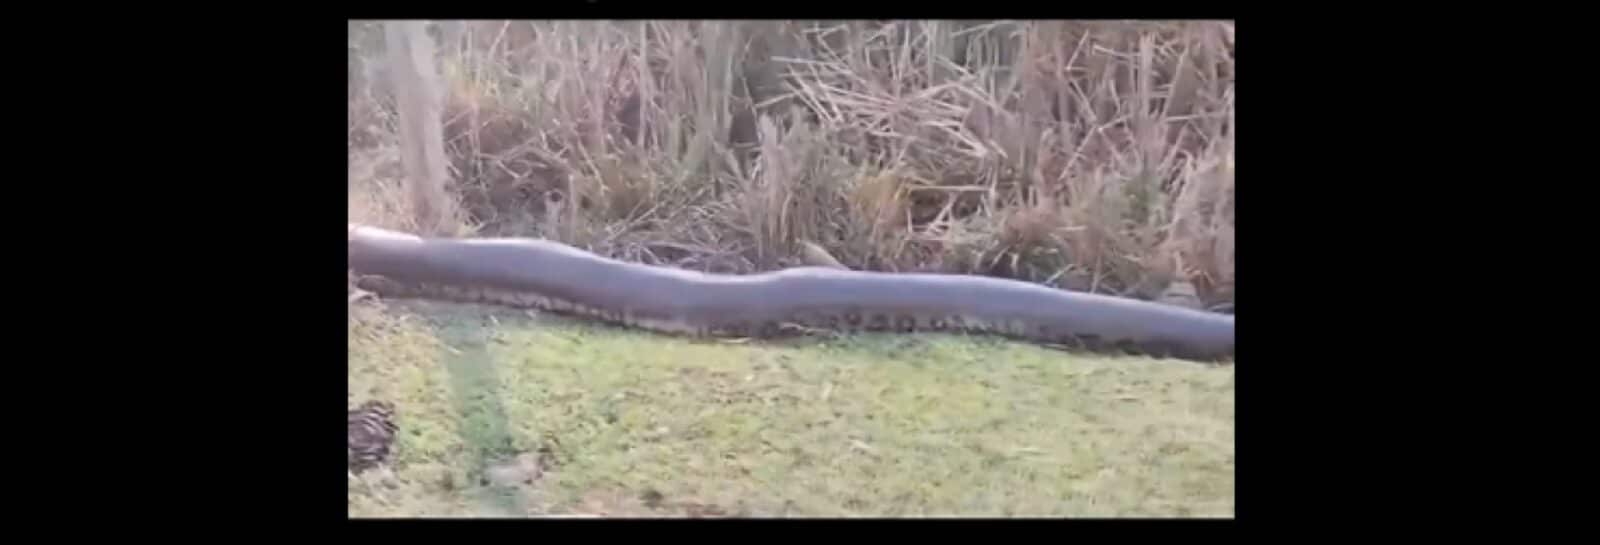 Cobra sucuri gigante é avistada em pastagem